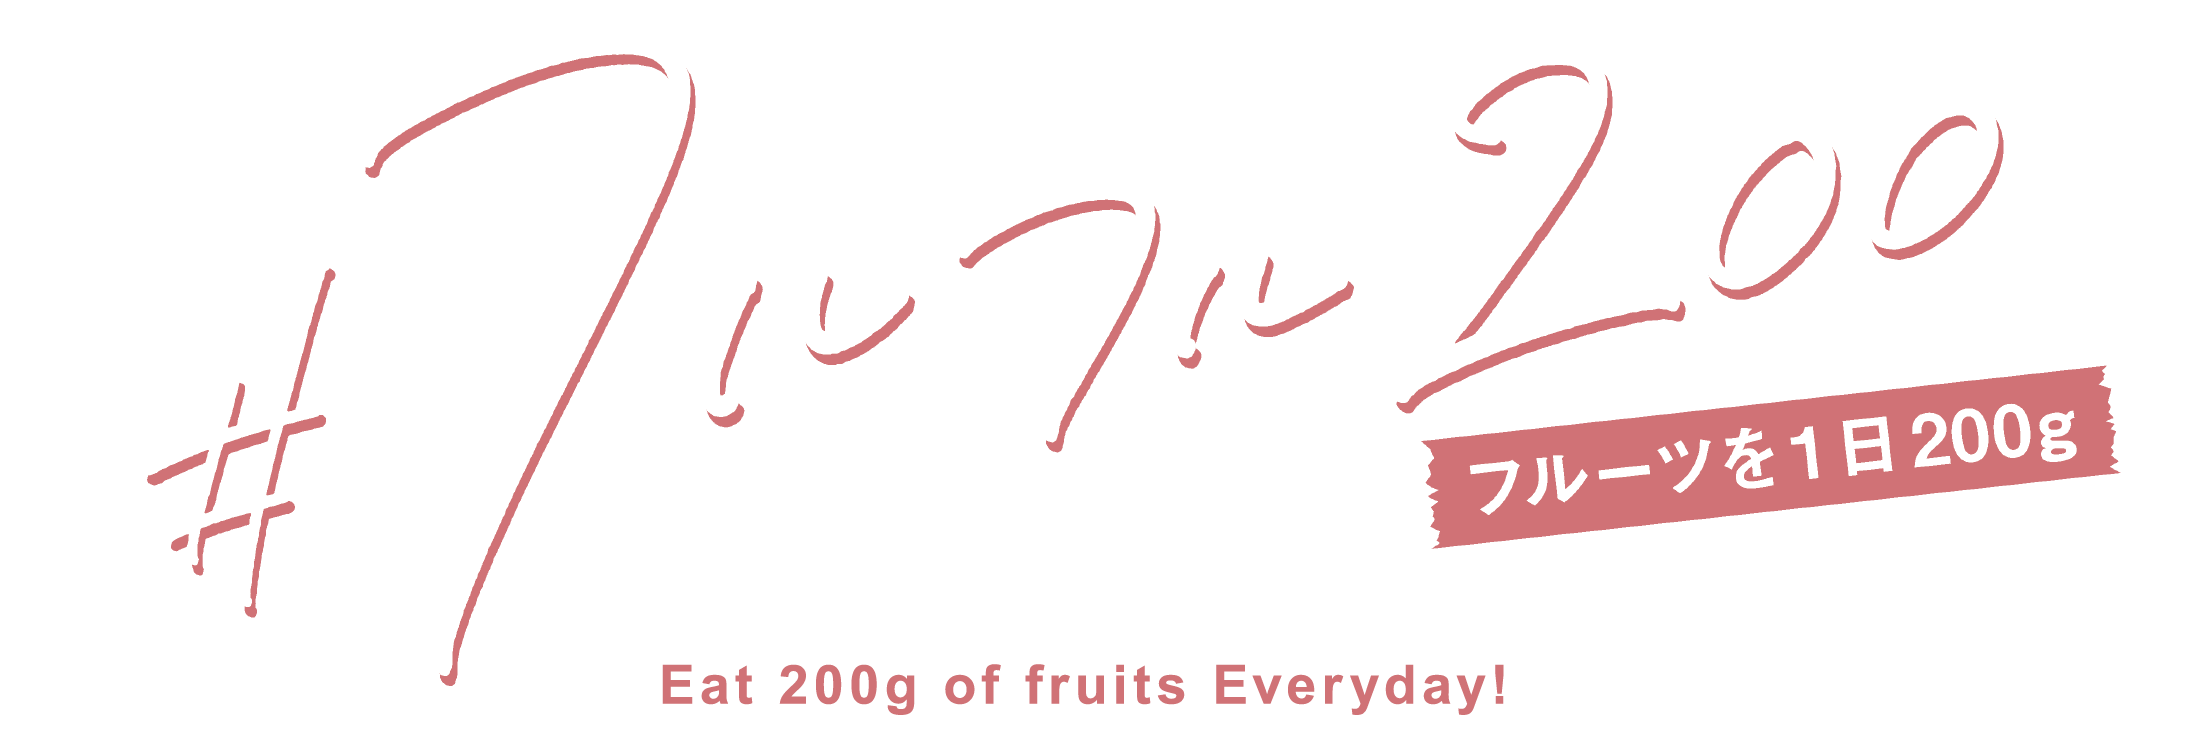 #フルフル200 フルーツを1日200g Eat 200g of fruits Everyday!